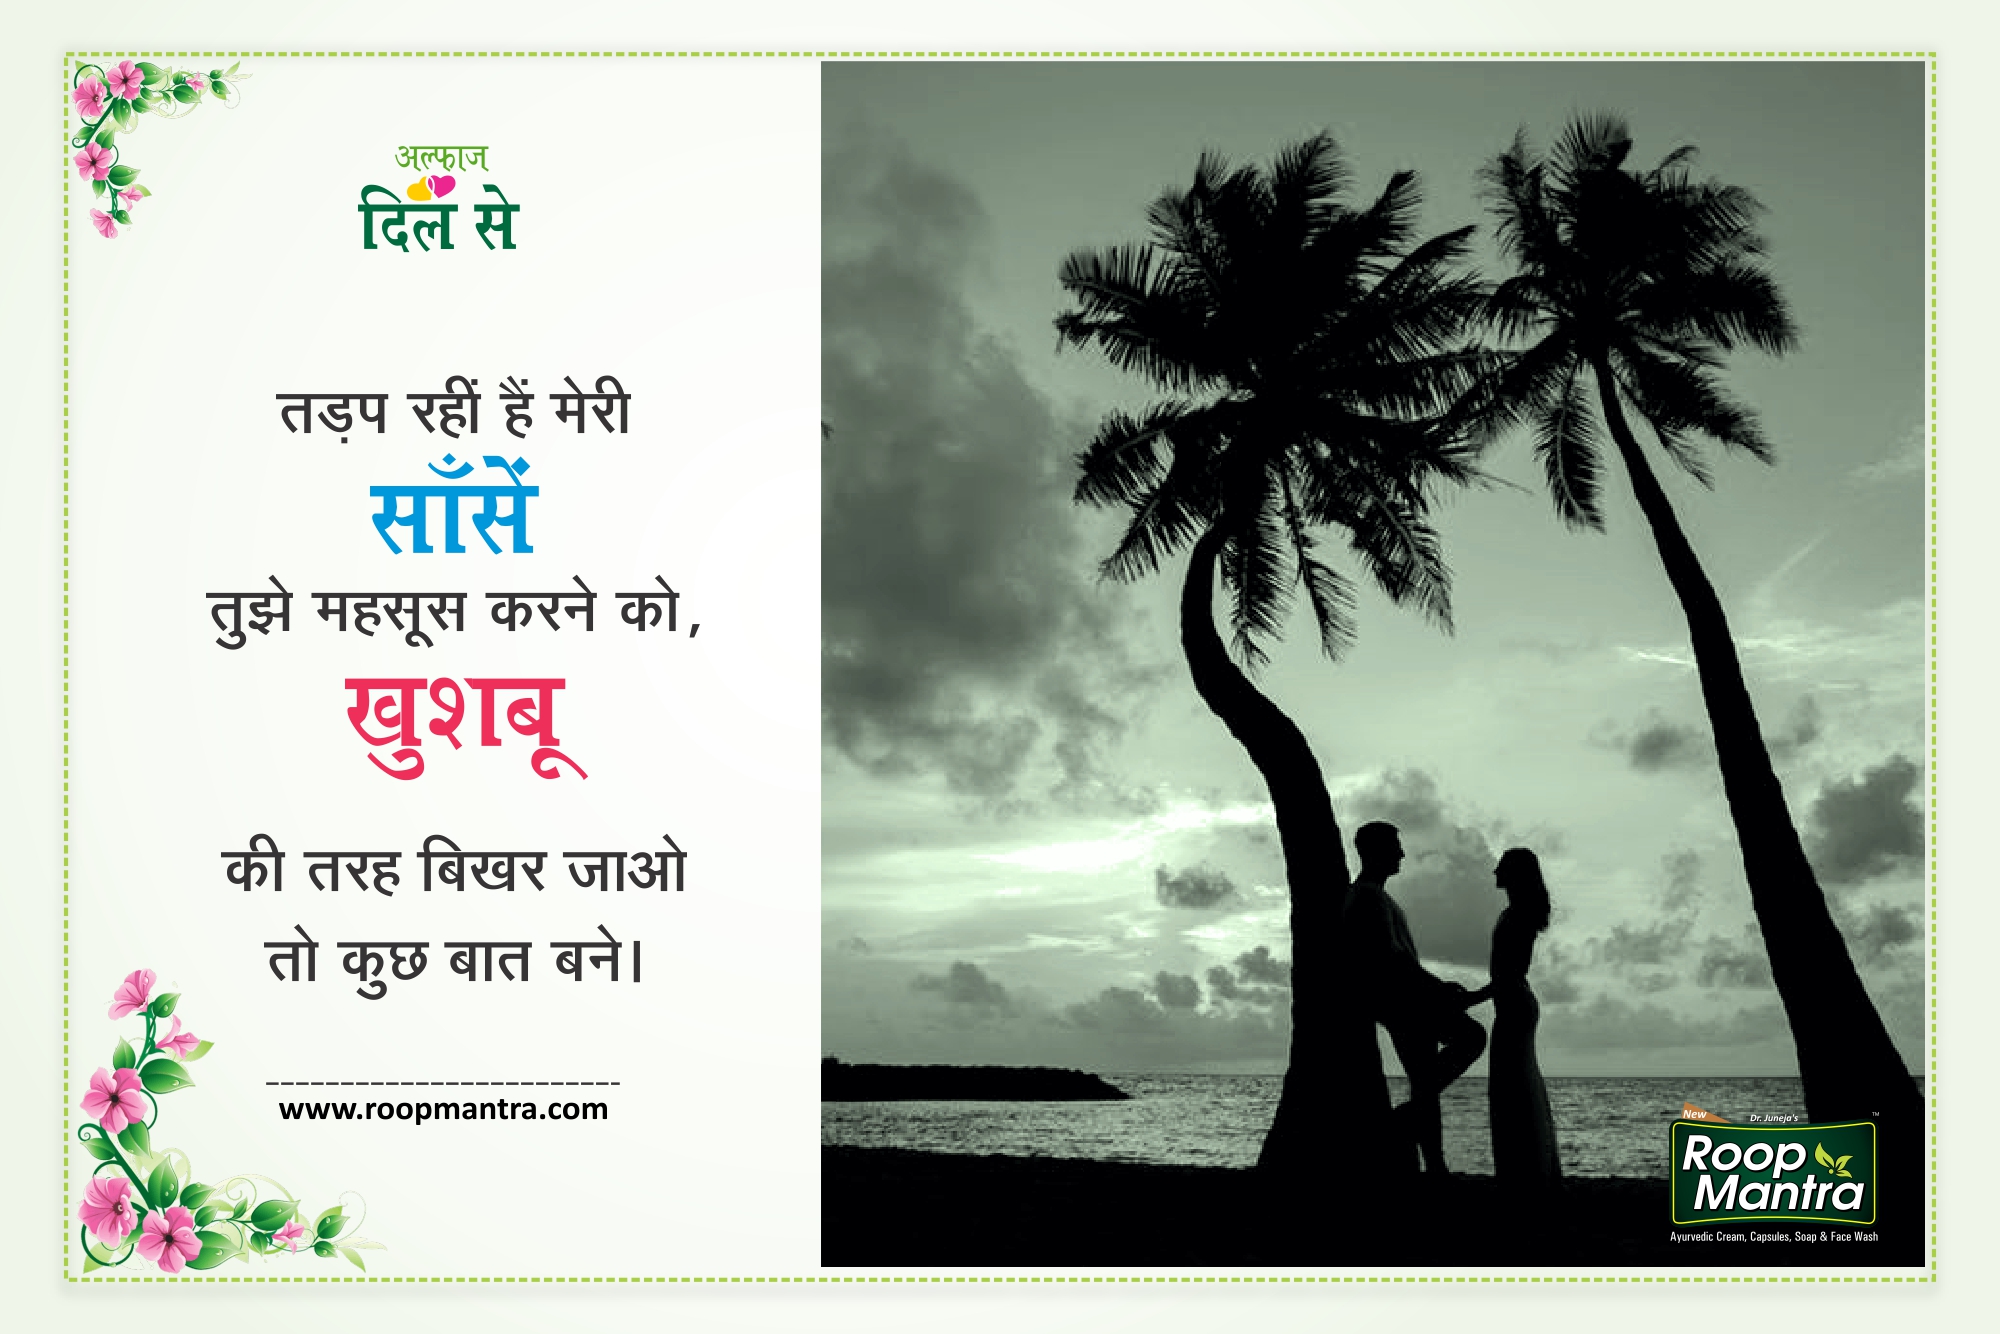 Romantic Shayari on Love in Hindi